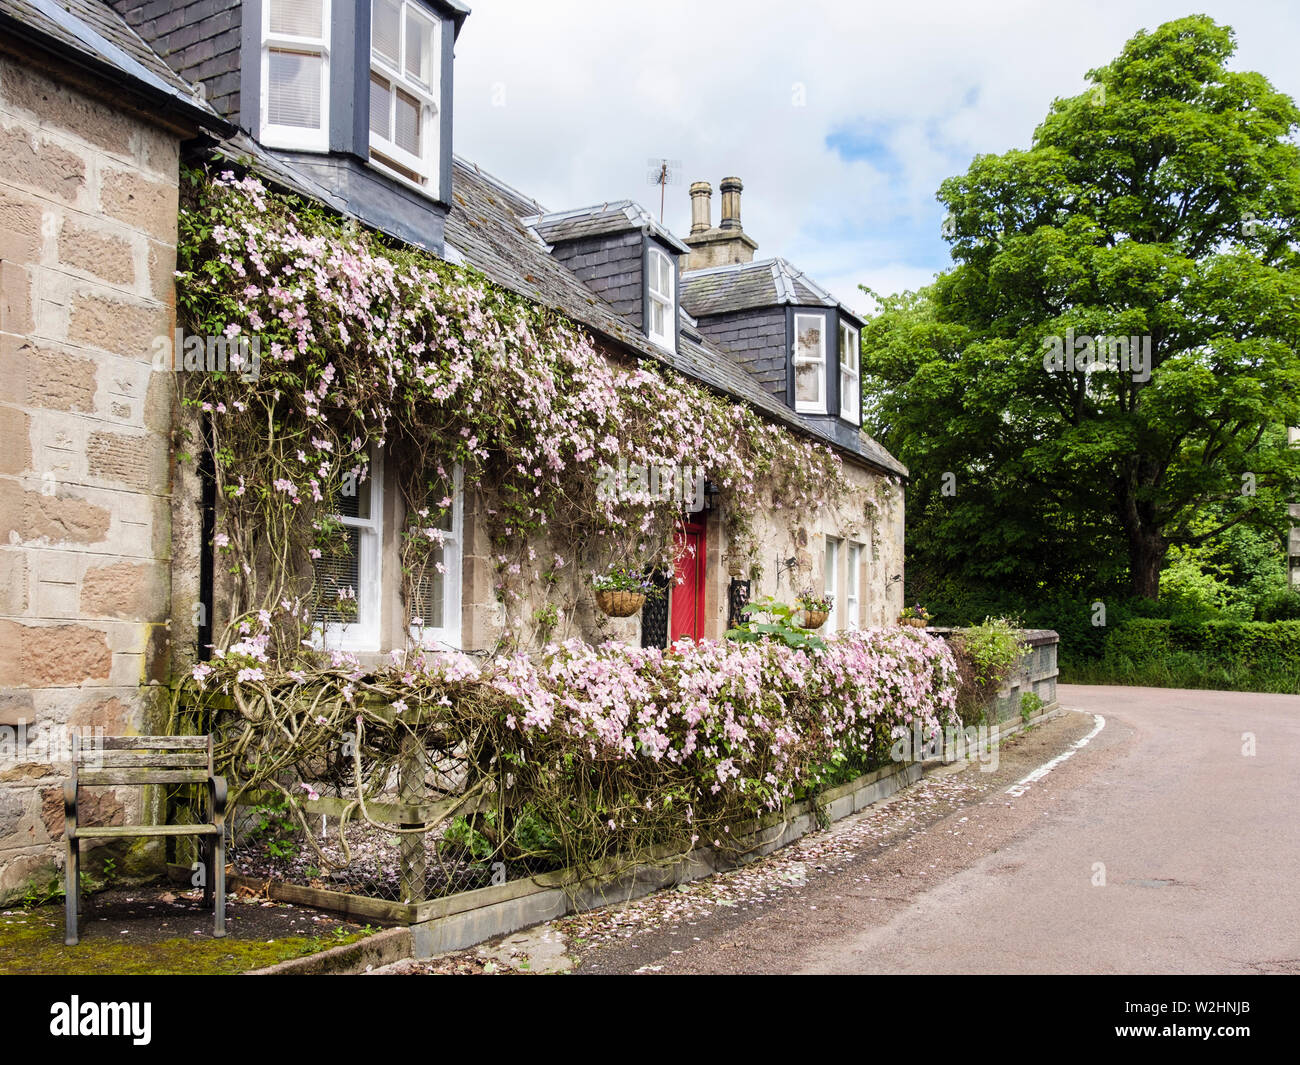 Traditionelle schottische Cottage in rosa Clematis montana Blumen im späten Frühling in der Erhaltung Dorf abgedeckt. Cawdor Nairn Highland Schottland Großbritannien Stockfoto